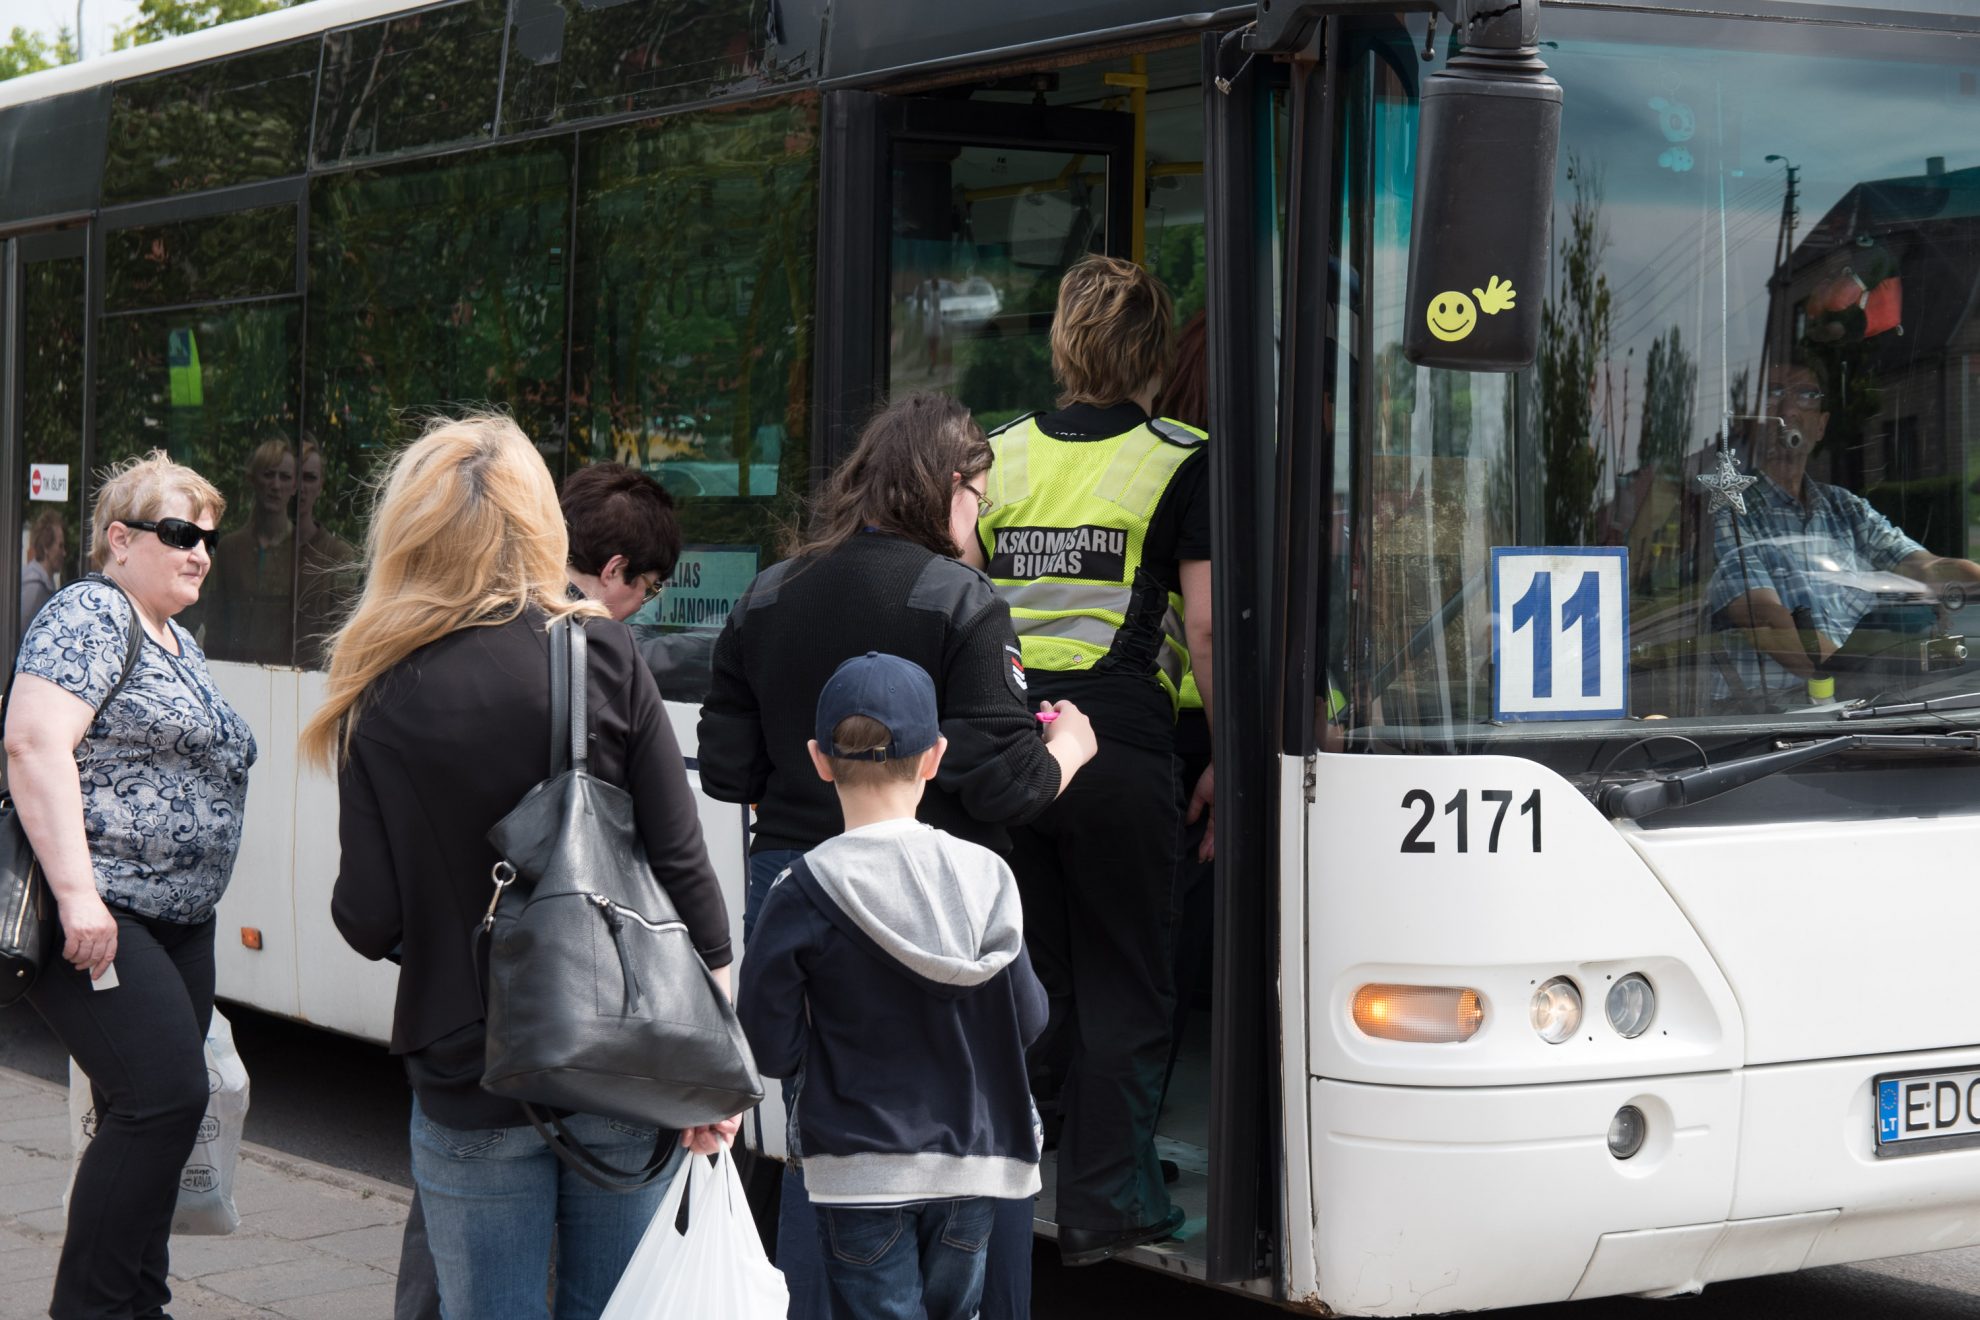 Panevėžio autobusų parko vairuotojams stinga elementarios kultūros, autobusams – švaros ir kelionė jais nėra komfortiška. Tokį miesto viešojo transporto paveikslą nupiešė panevėžiečiai, dalyvavę pirmą kartą Savivaldybės surengtoje elektroninėje gyventojų apklausoje.